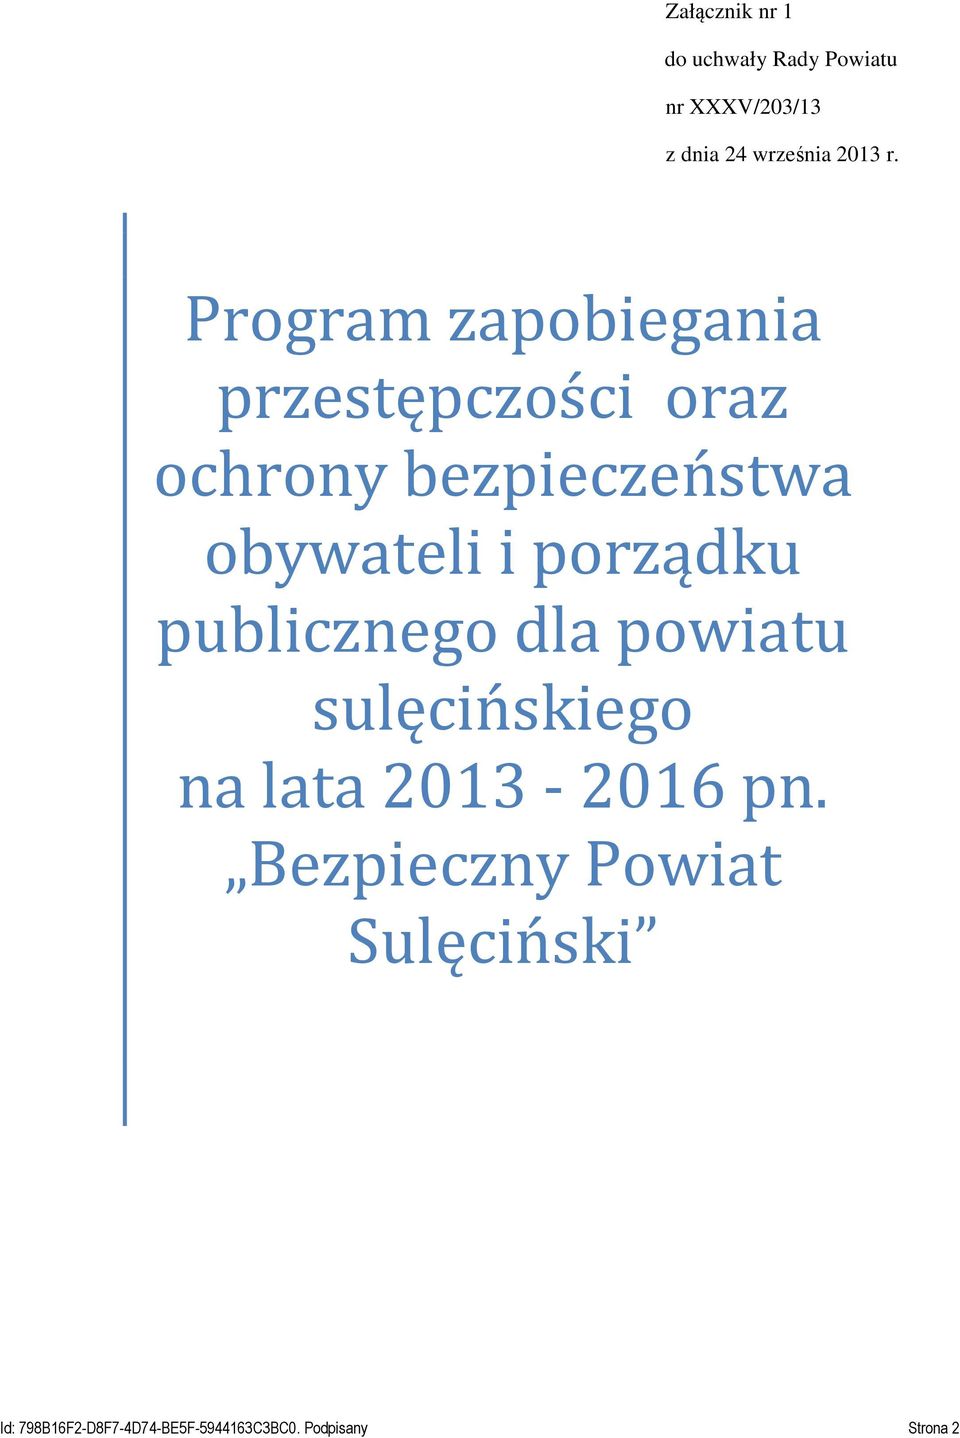 porządku publicznego dla powiatu sulęcińskiego na lata 2013-2016 pn.